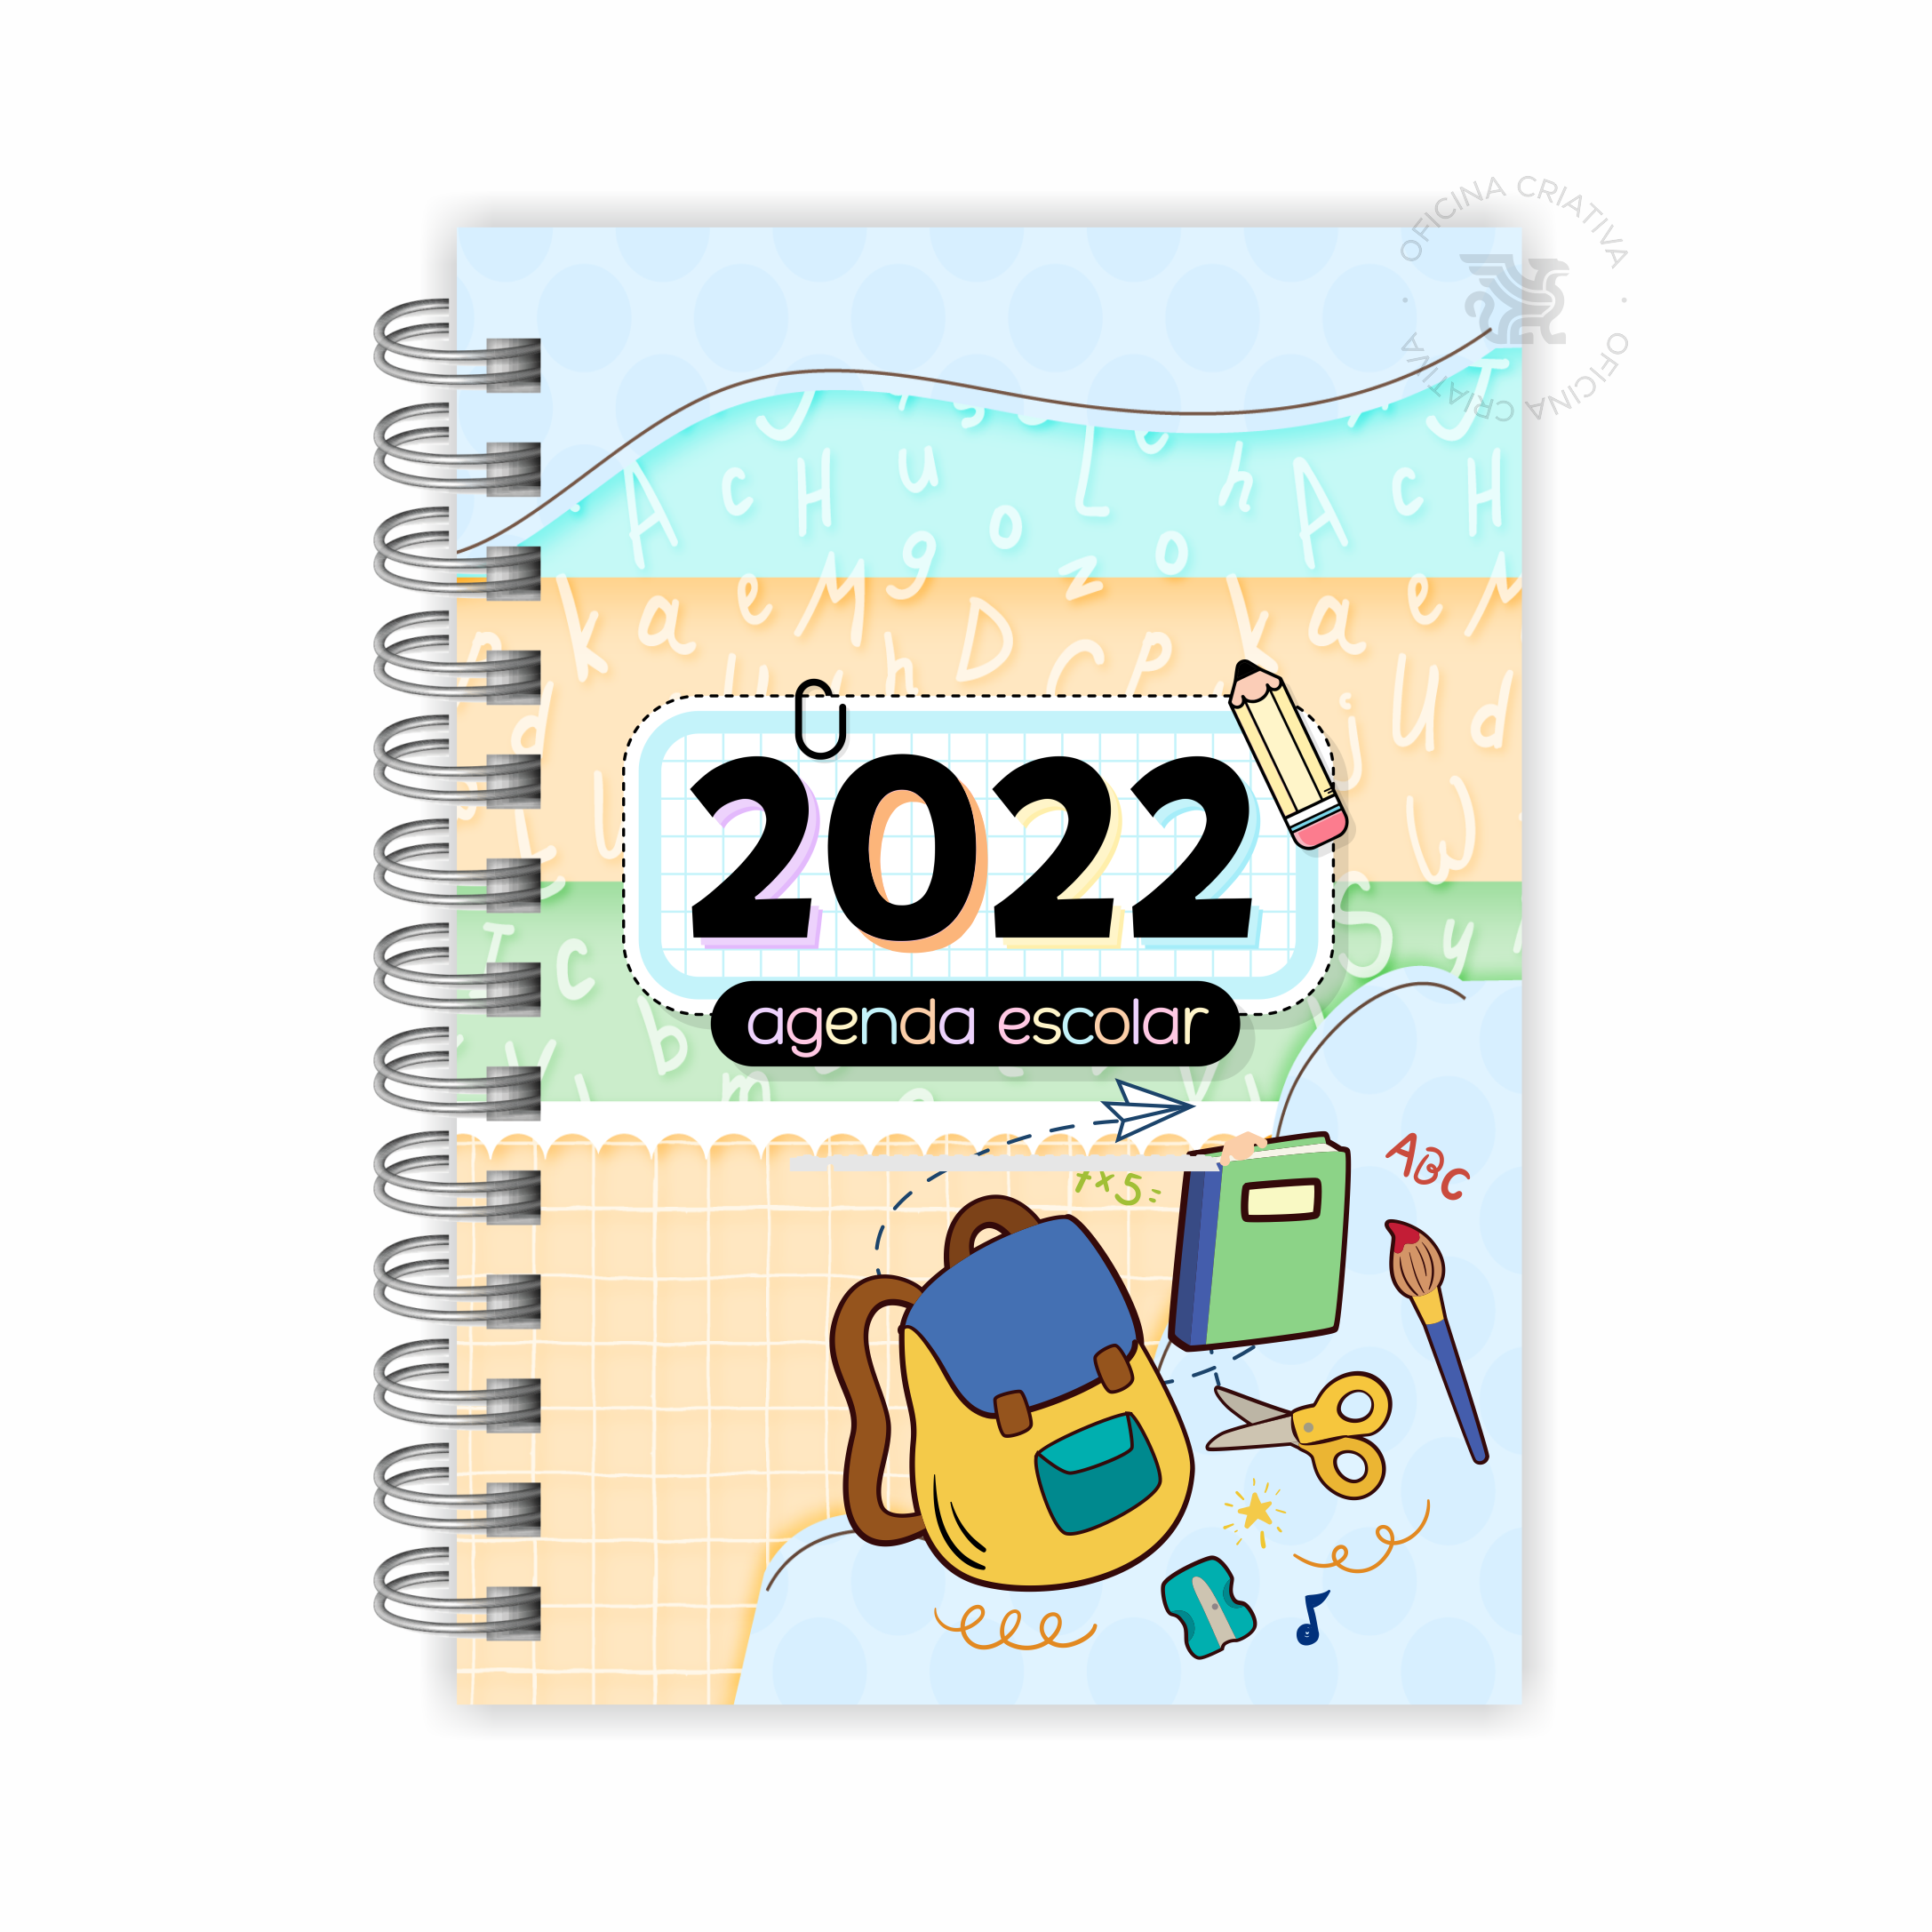 Bloco trimestral do calendário para o ano de 2022, outubro de 2022